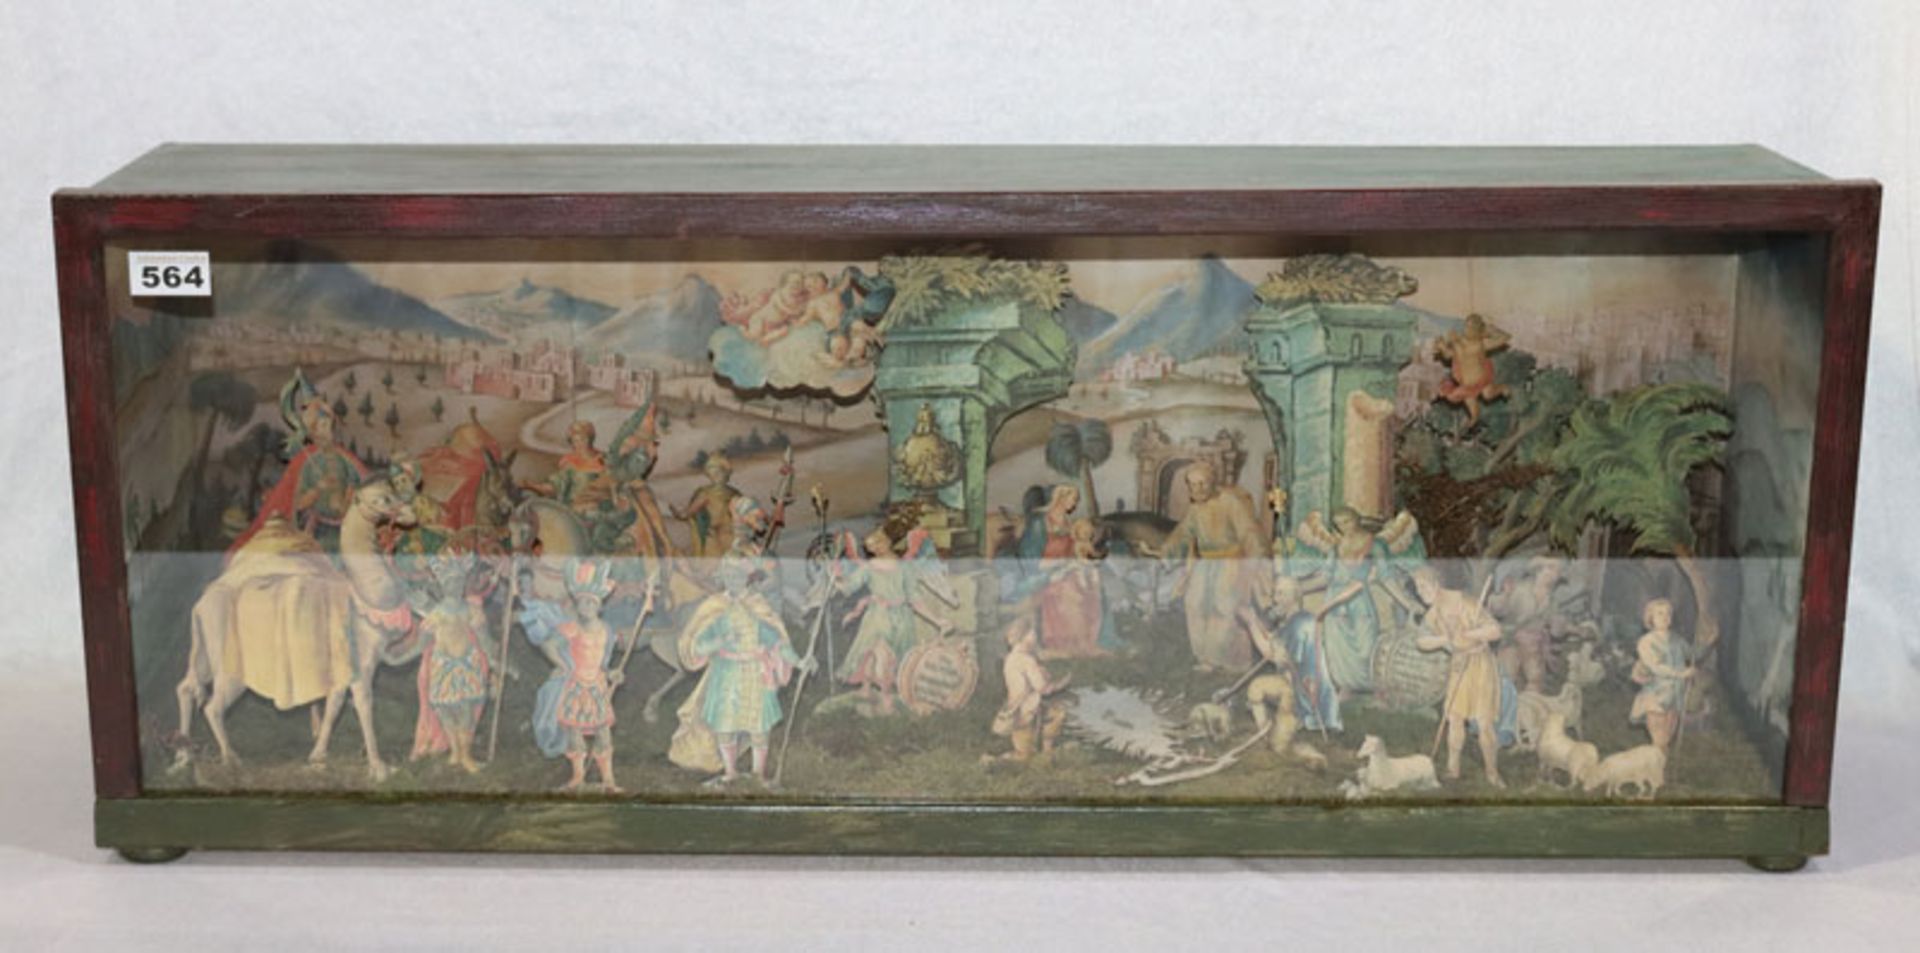 Kastenkrippe mit Papierfiguren in verglasten Holzkasten, innen bemalt, schöne Handarbeit, H 35 cm, B